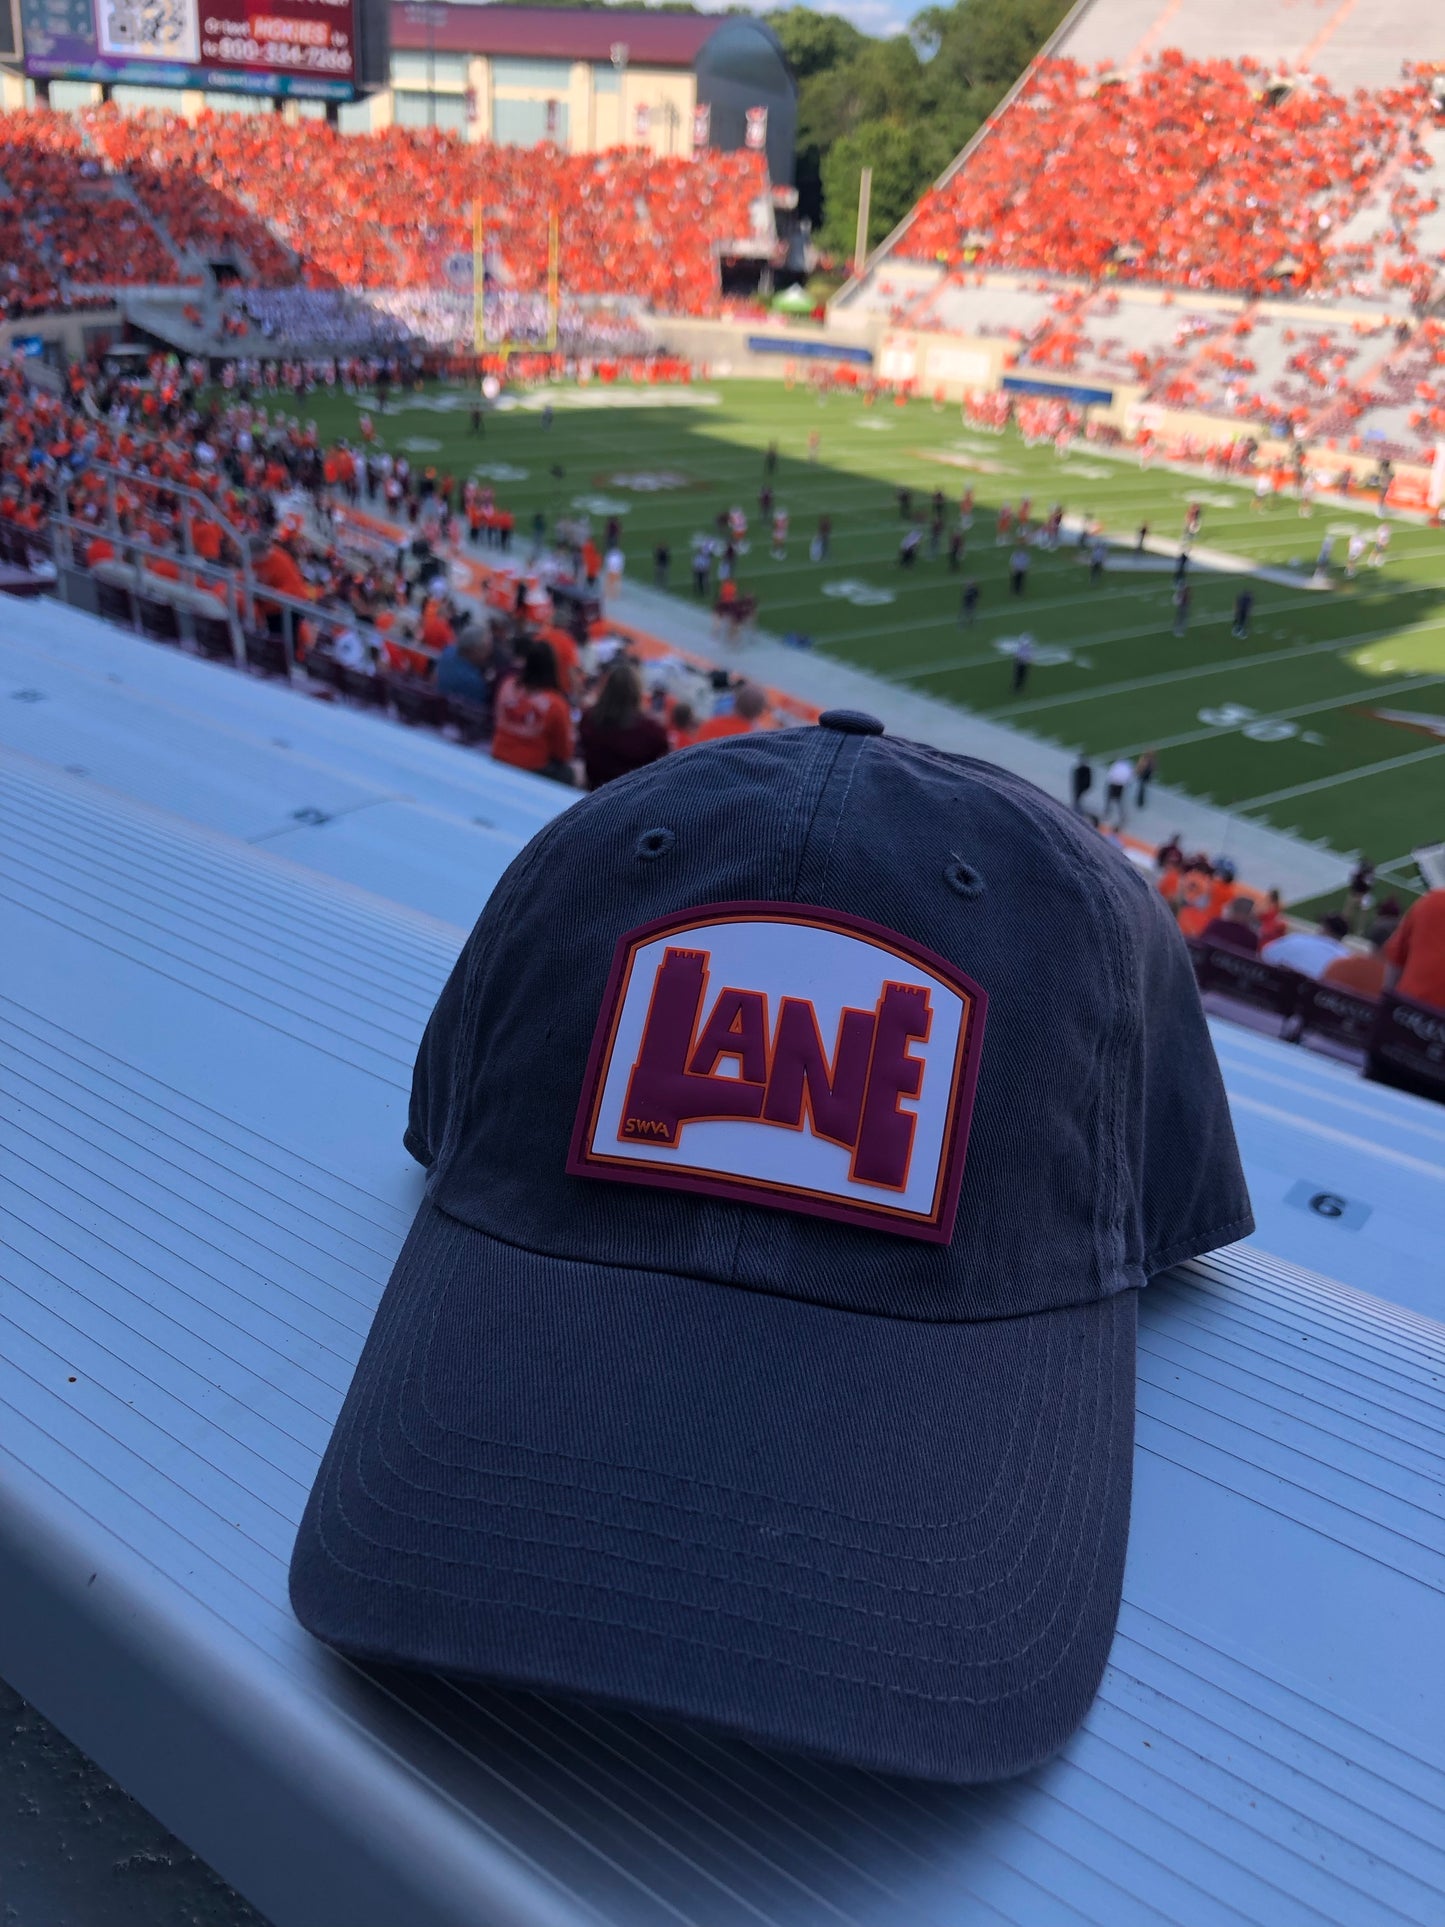 LANE Hat - Charcoal